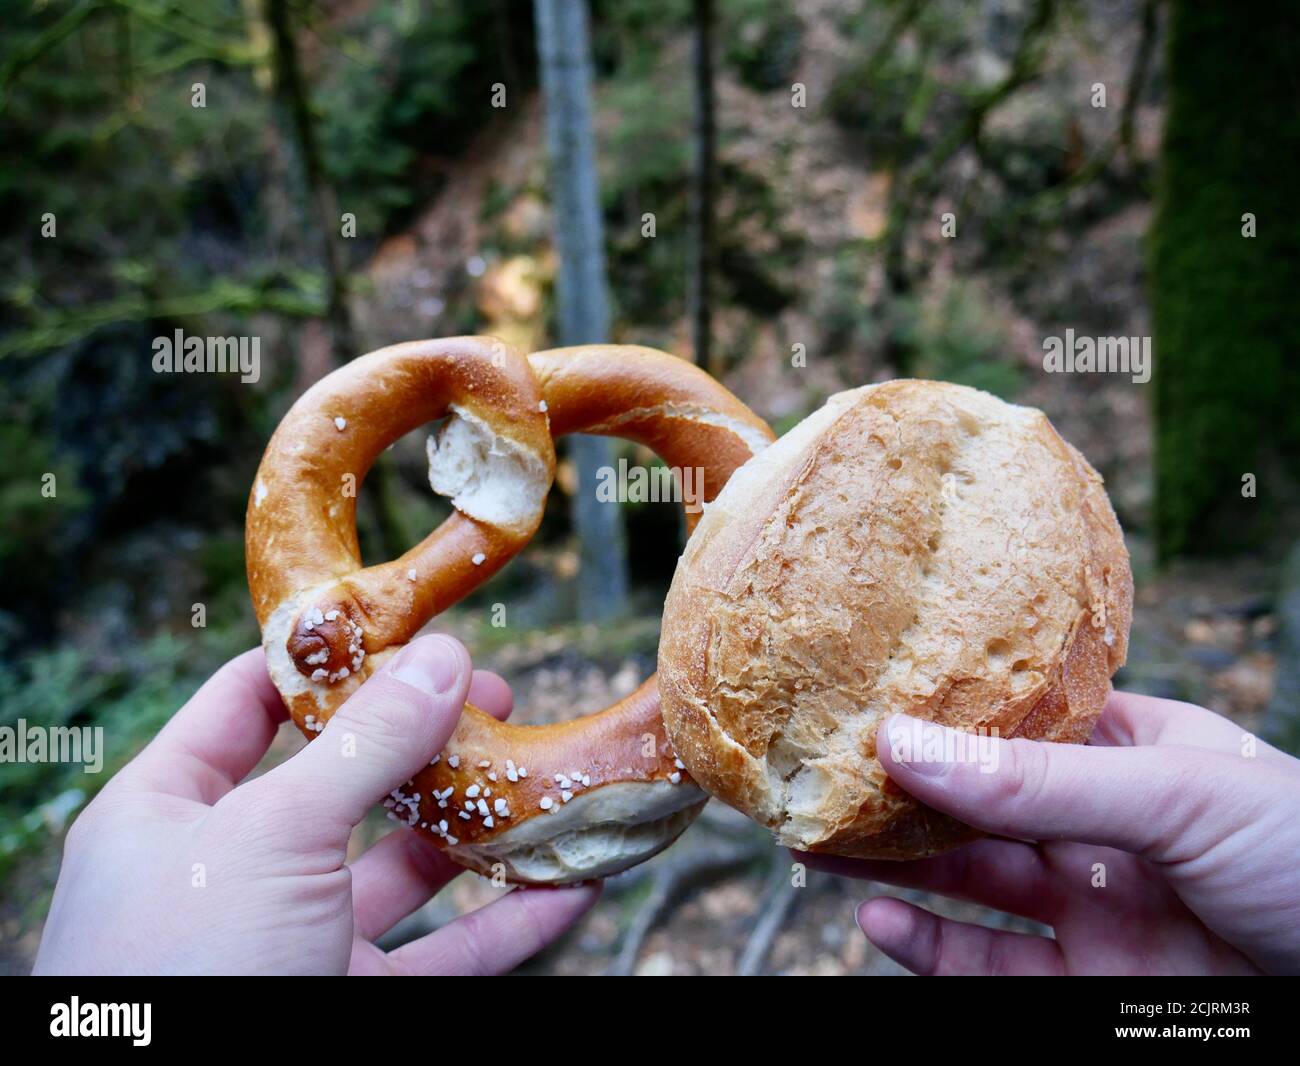 Bayrisches Frühstück beim wandern im Schwarzwald. Pause beim wandern im wunderschönen Wald. Stock Photo